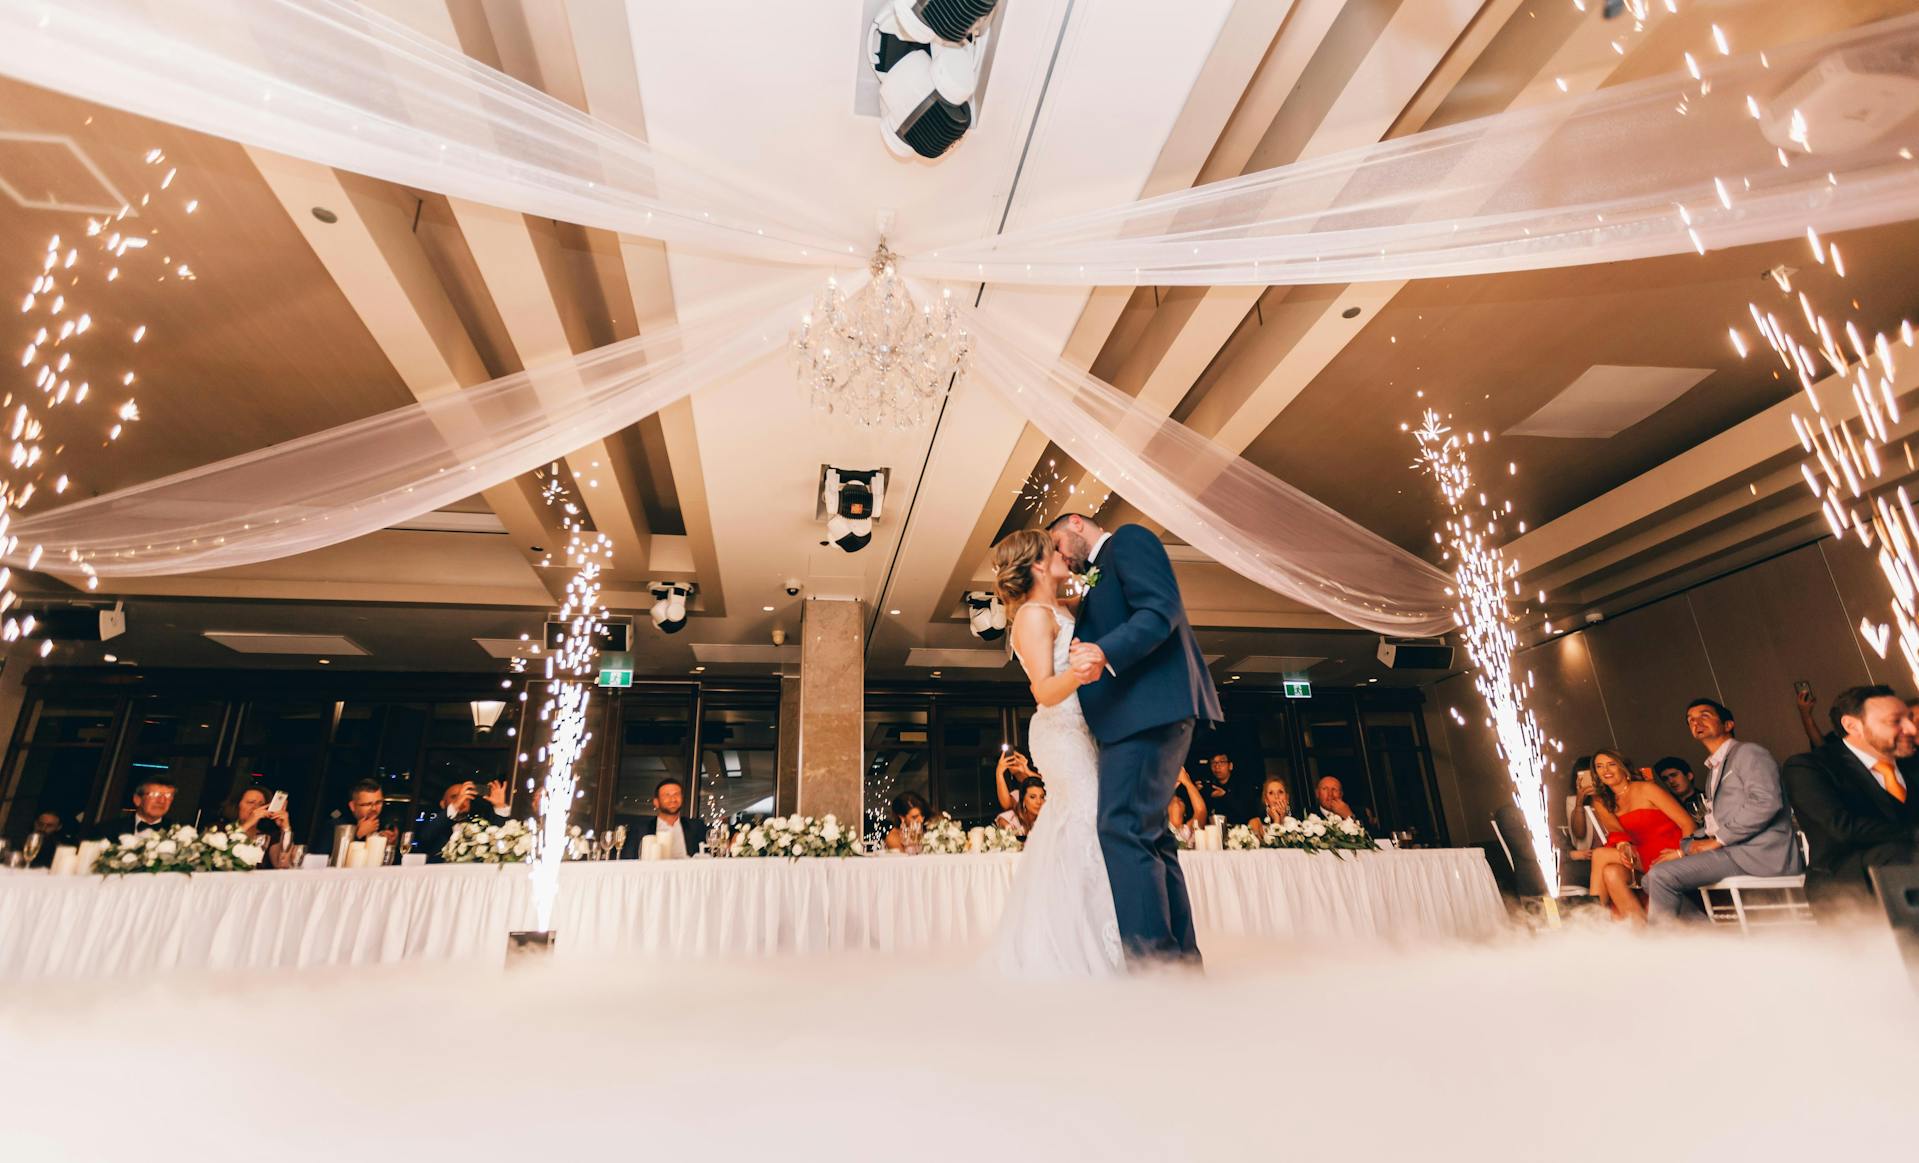 A wedding reception | Source: Pexels